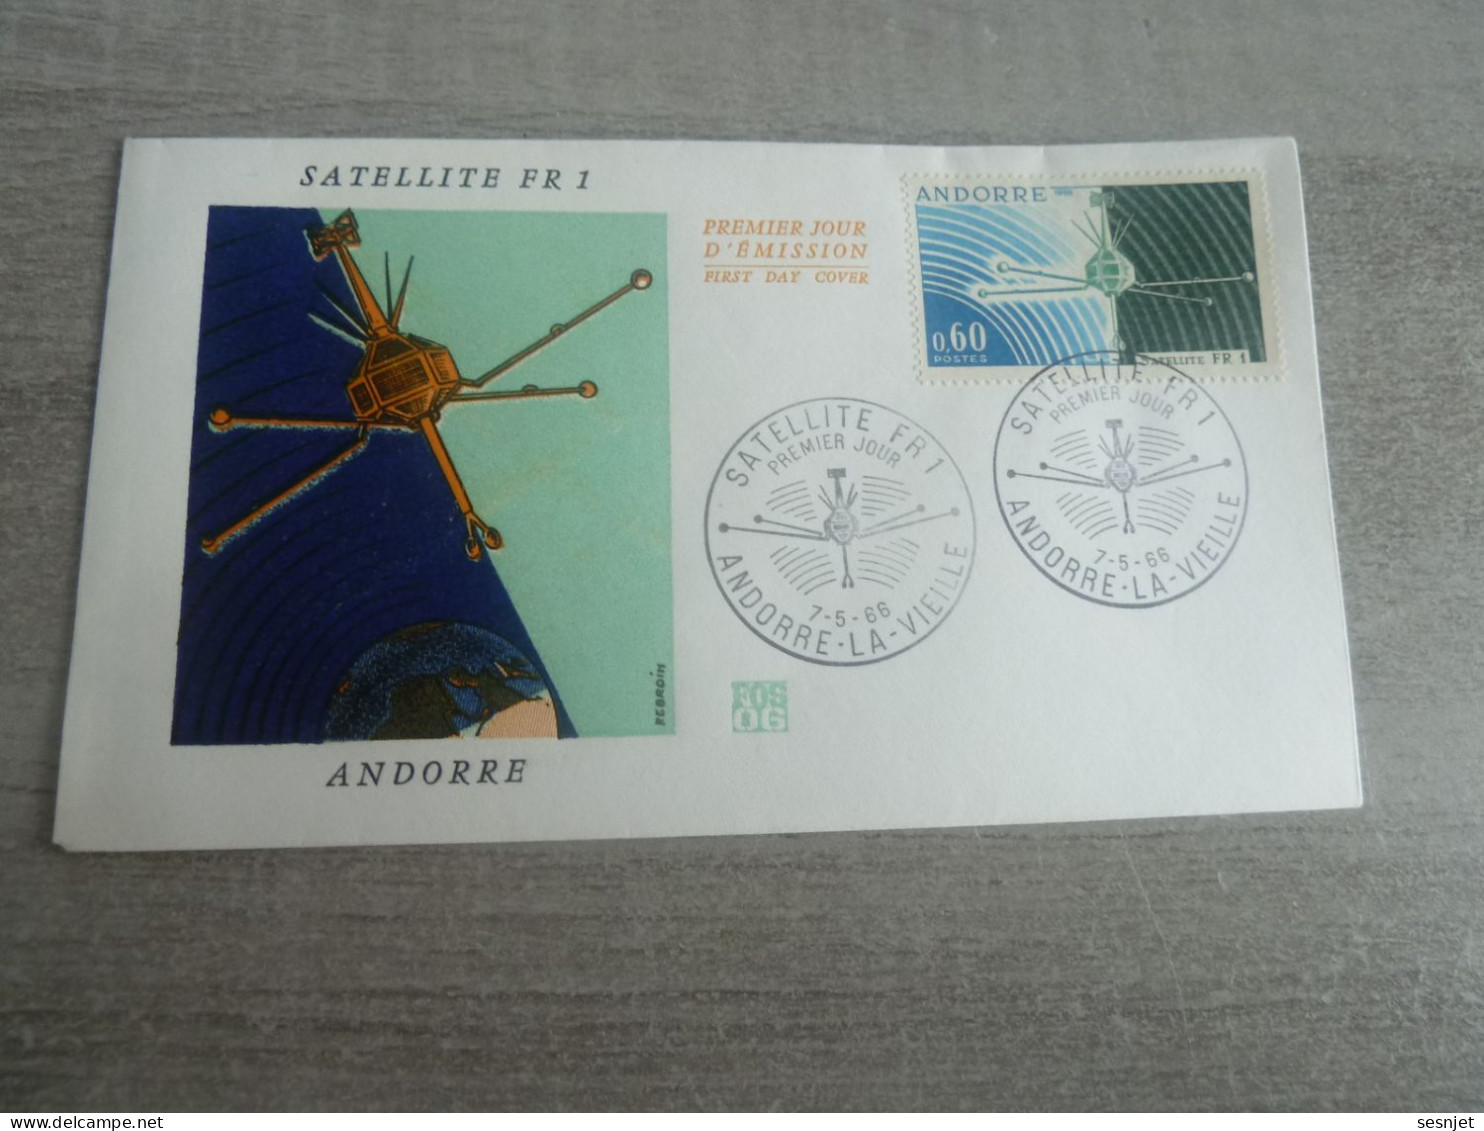 Andorre-la-Vieille - Satellite Français Fr 1 - Enveloppe Premier Jour D'Emission - Année 1966 - - Europa